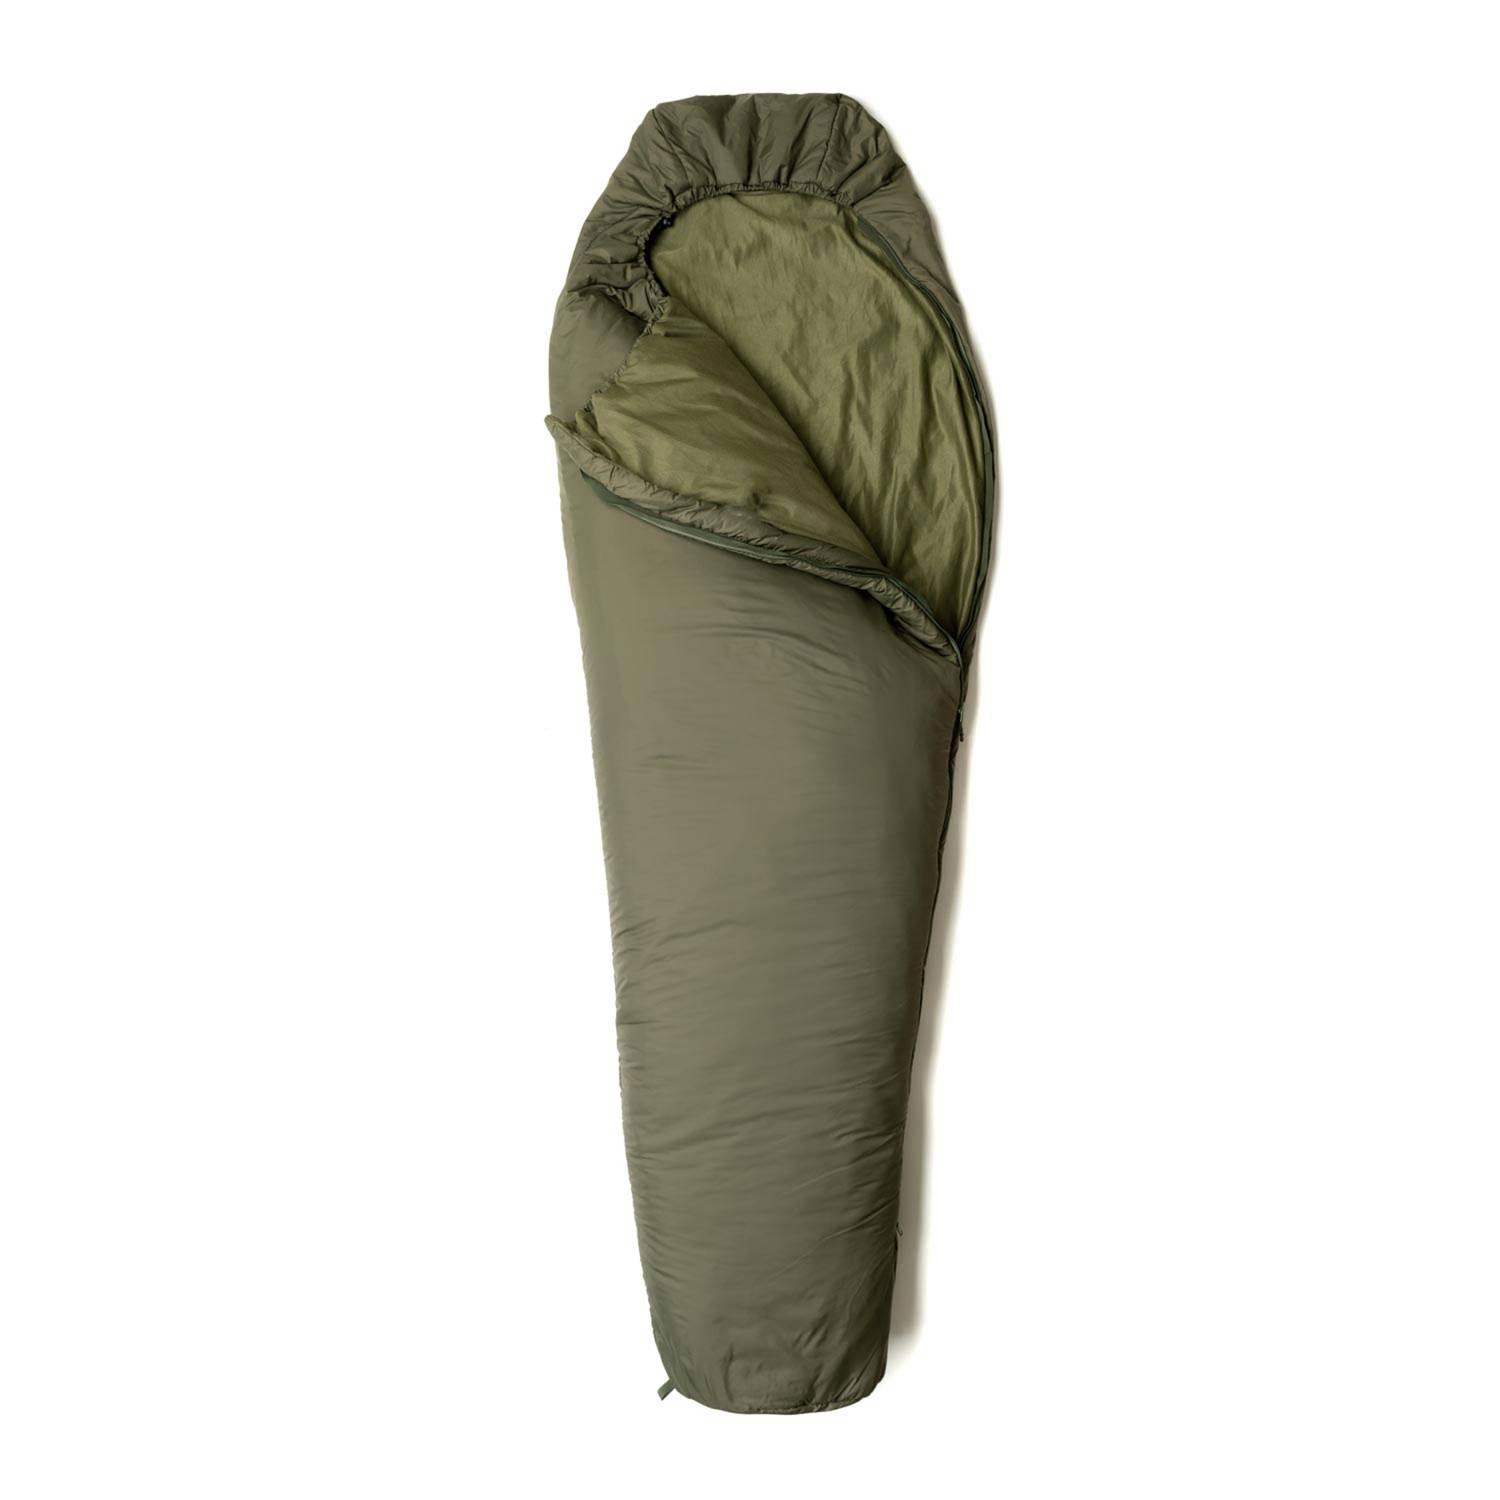 Snugpak Tactical Series 2 Sleeping Bag in Olive Green